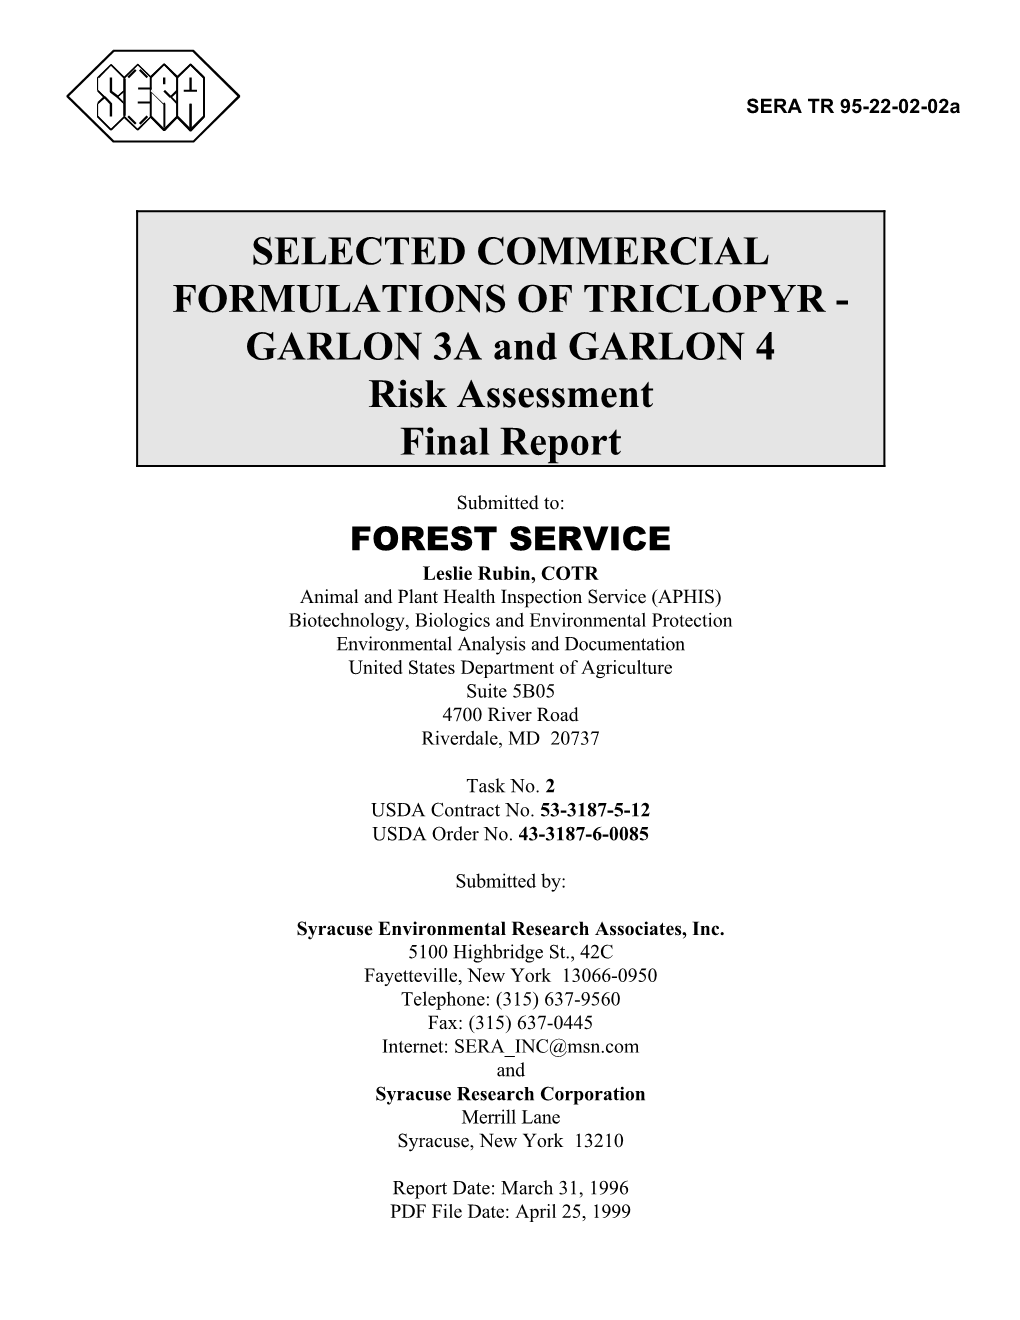 TRICLOPYR - GARLON 3A and GARLON 4 Risk Assessment Final Report